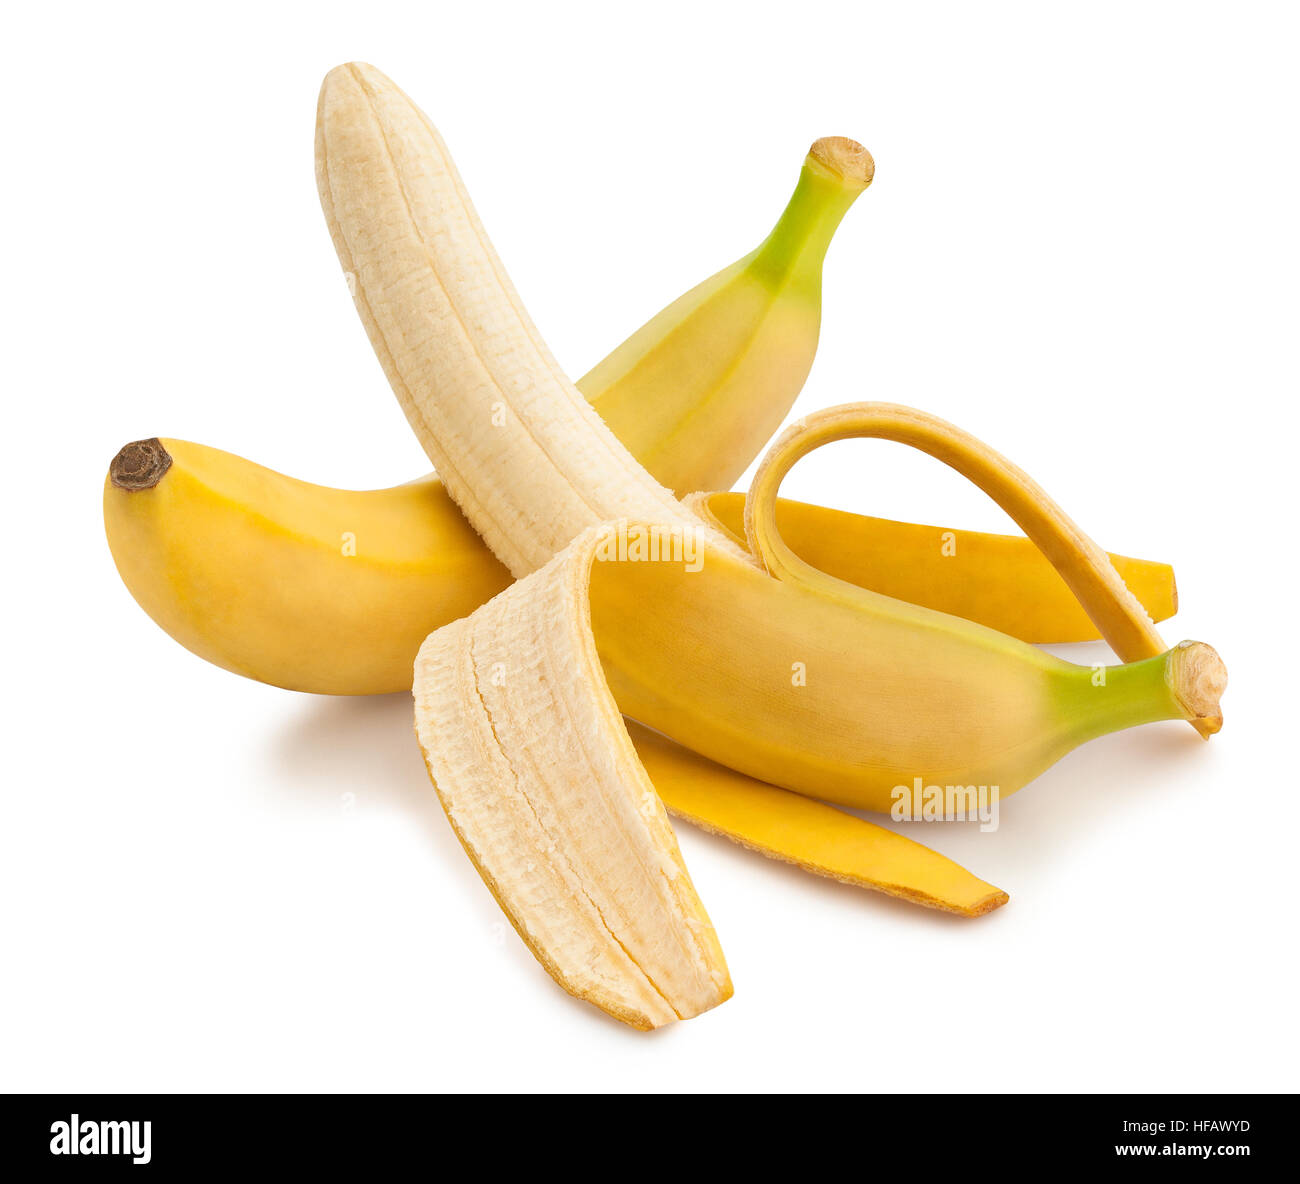 peeled banana isolated Stock Photo